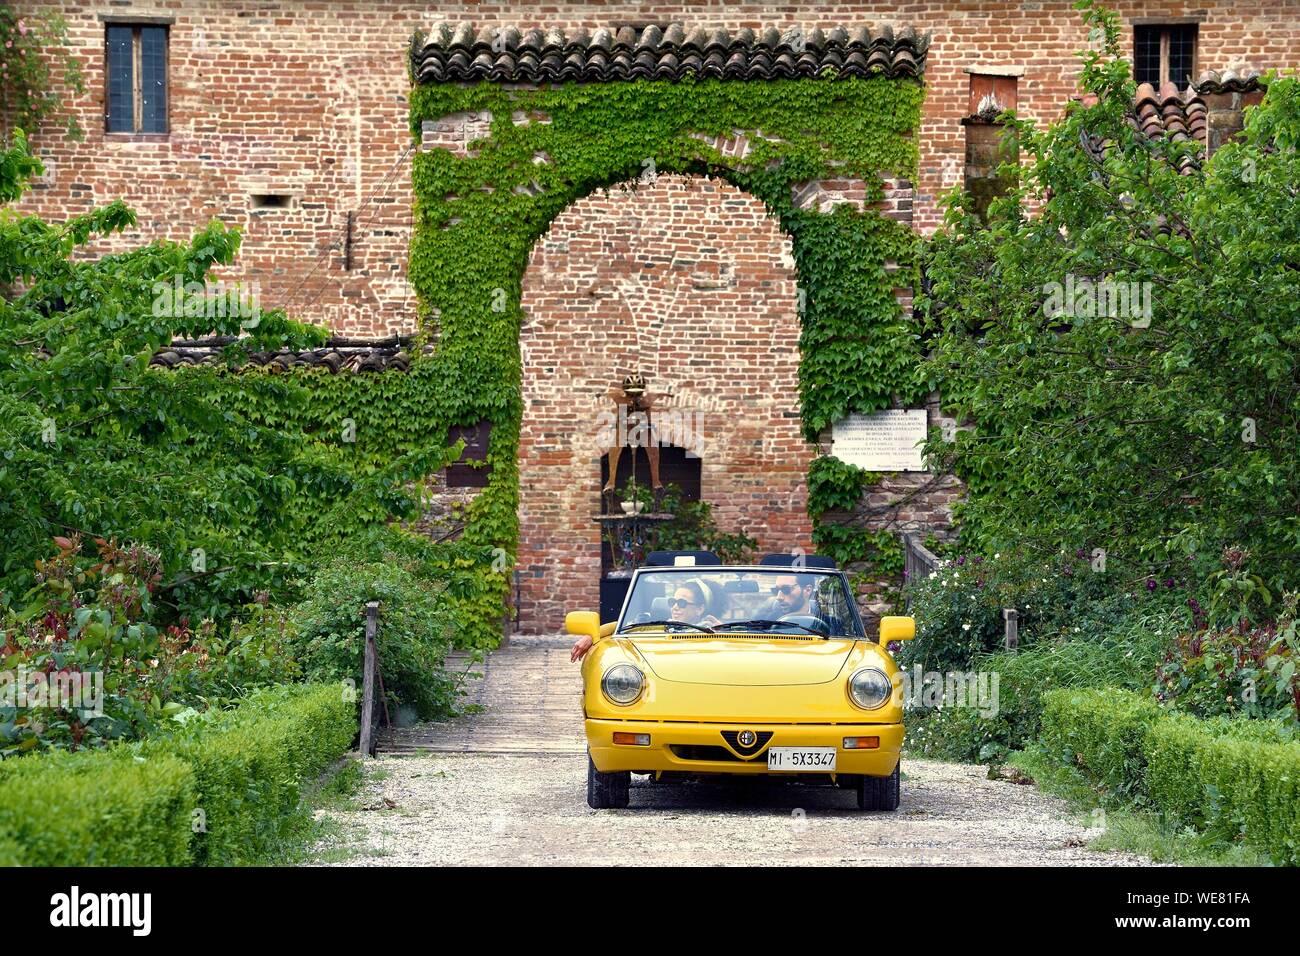 L'Italie, l'Emilie Romagne, Parme, près de Zibello Polesine Antica Corte Pallavicina Hôtel et restaurant, Alfa Romeo Spider Duetto cabriolet jaune Banque D'Images